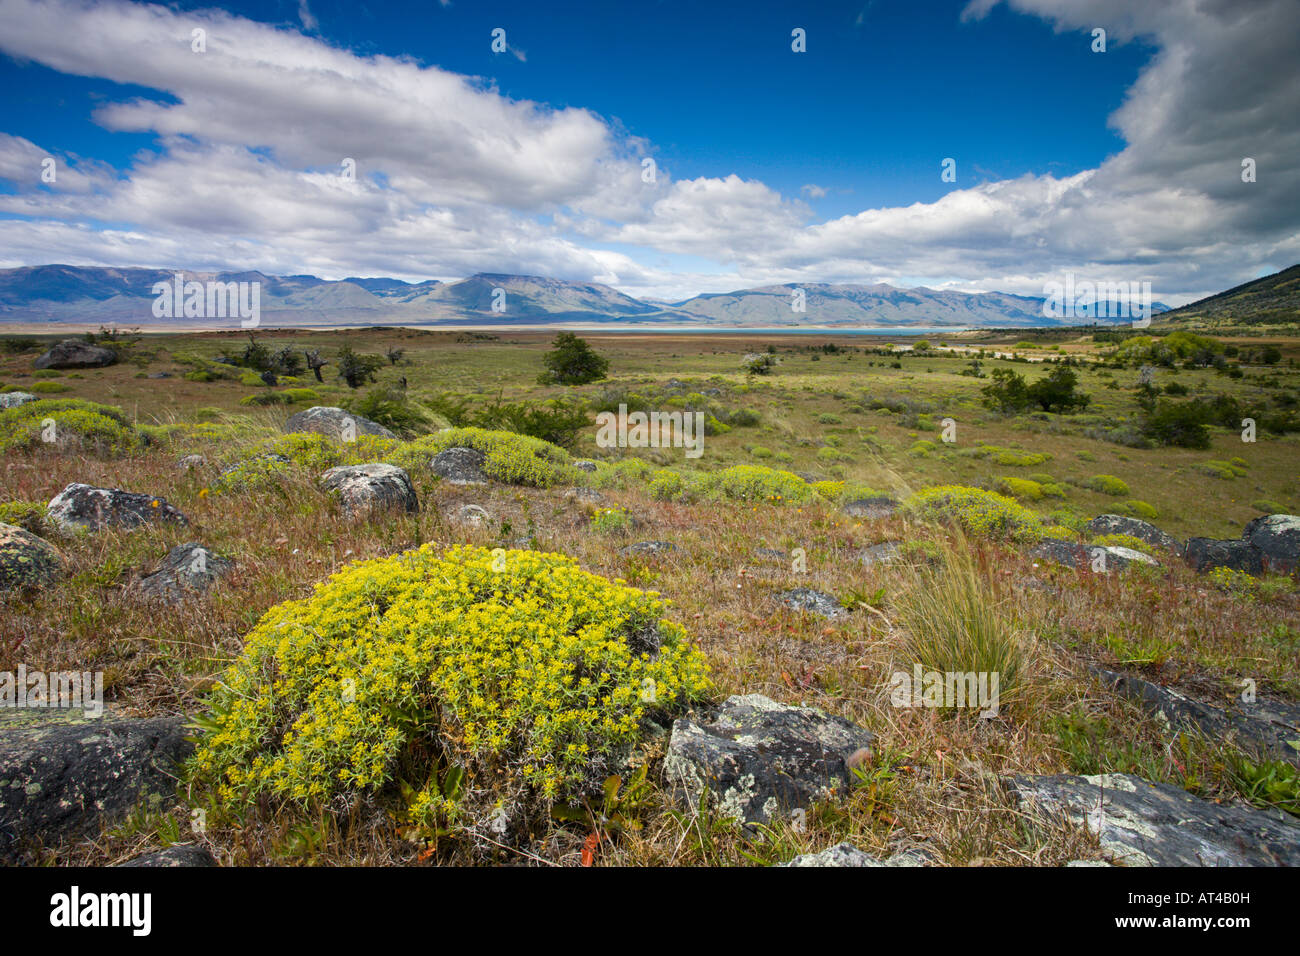 Sommer auf der patagonischen Steppe, Argentinien Stockfotografie - Alamy